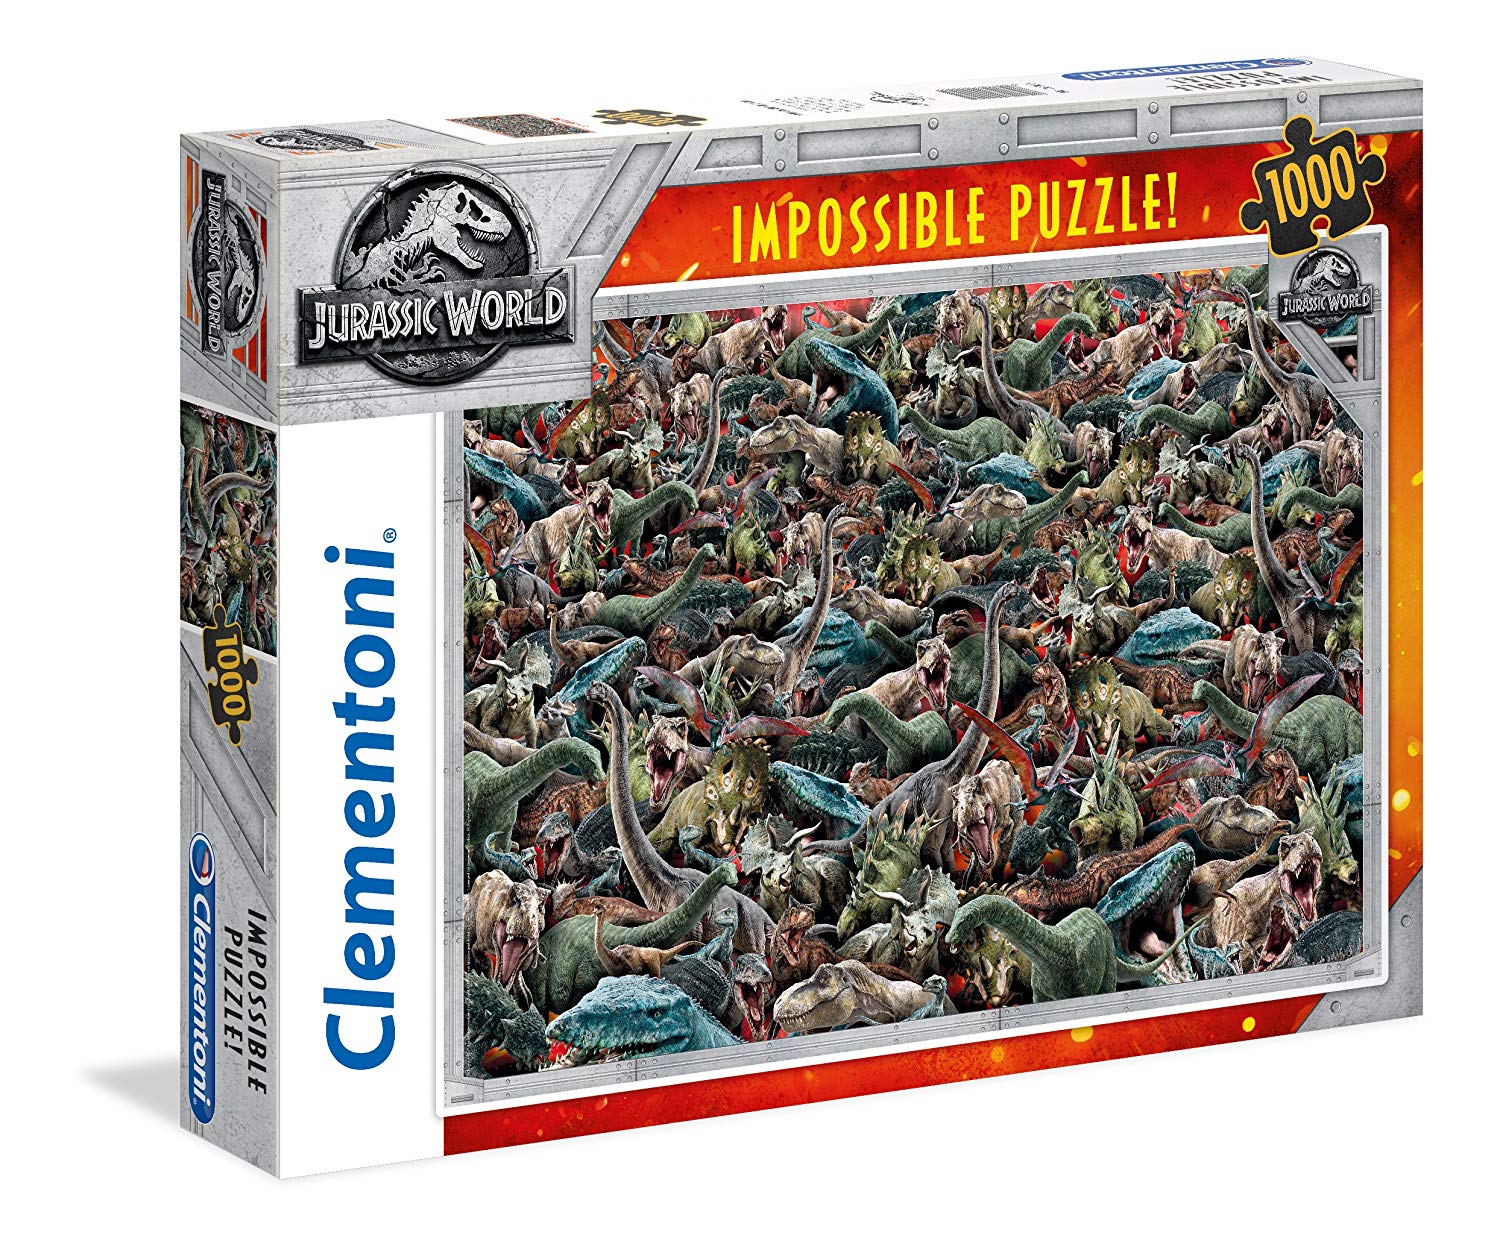 uitbreiden nep Melbourne Clementoni 39470 Jurassic Park/World Clementoni-39470-Impossible Puzzle  World-1000 Pieces, Multi-Colour – TopToy